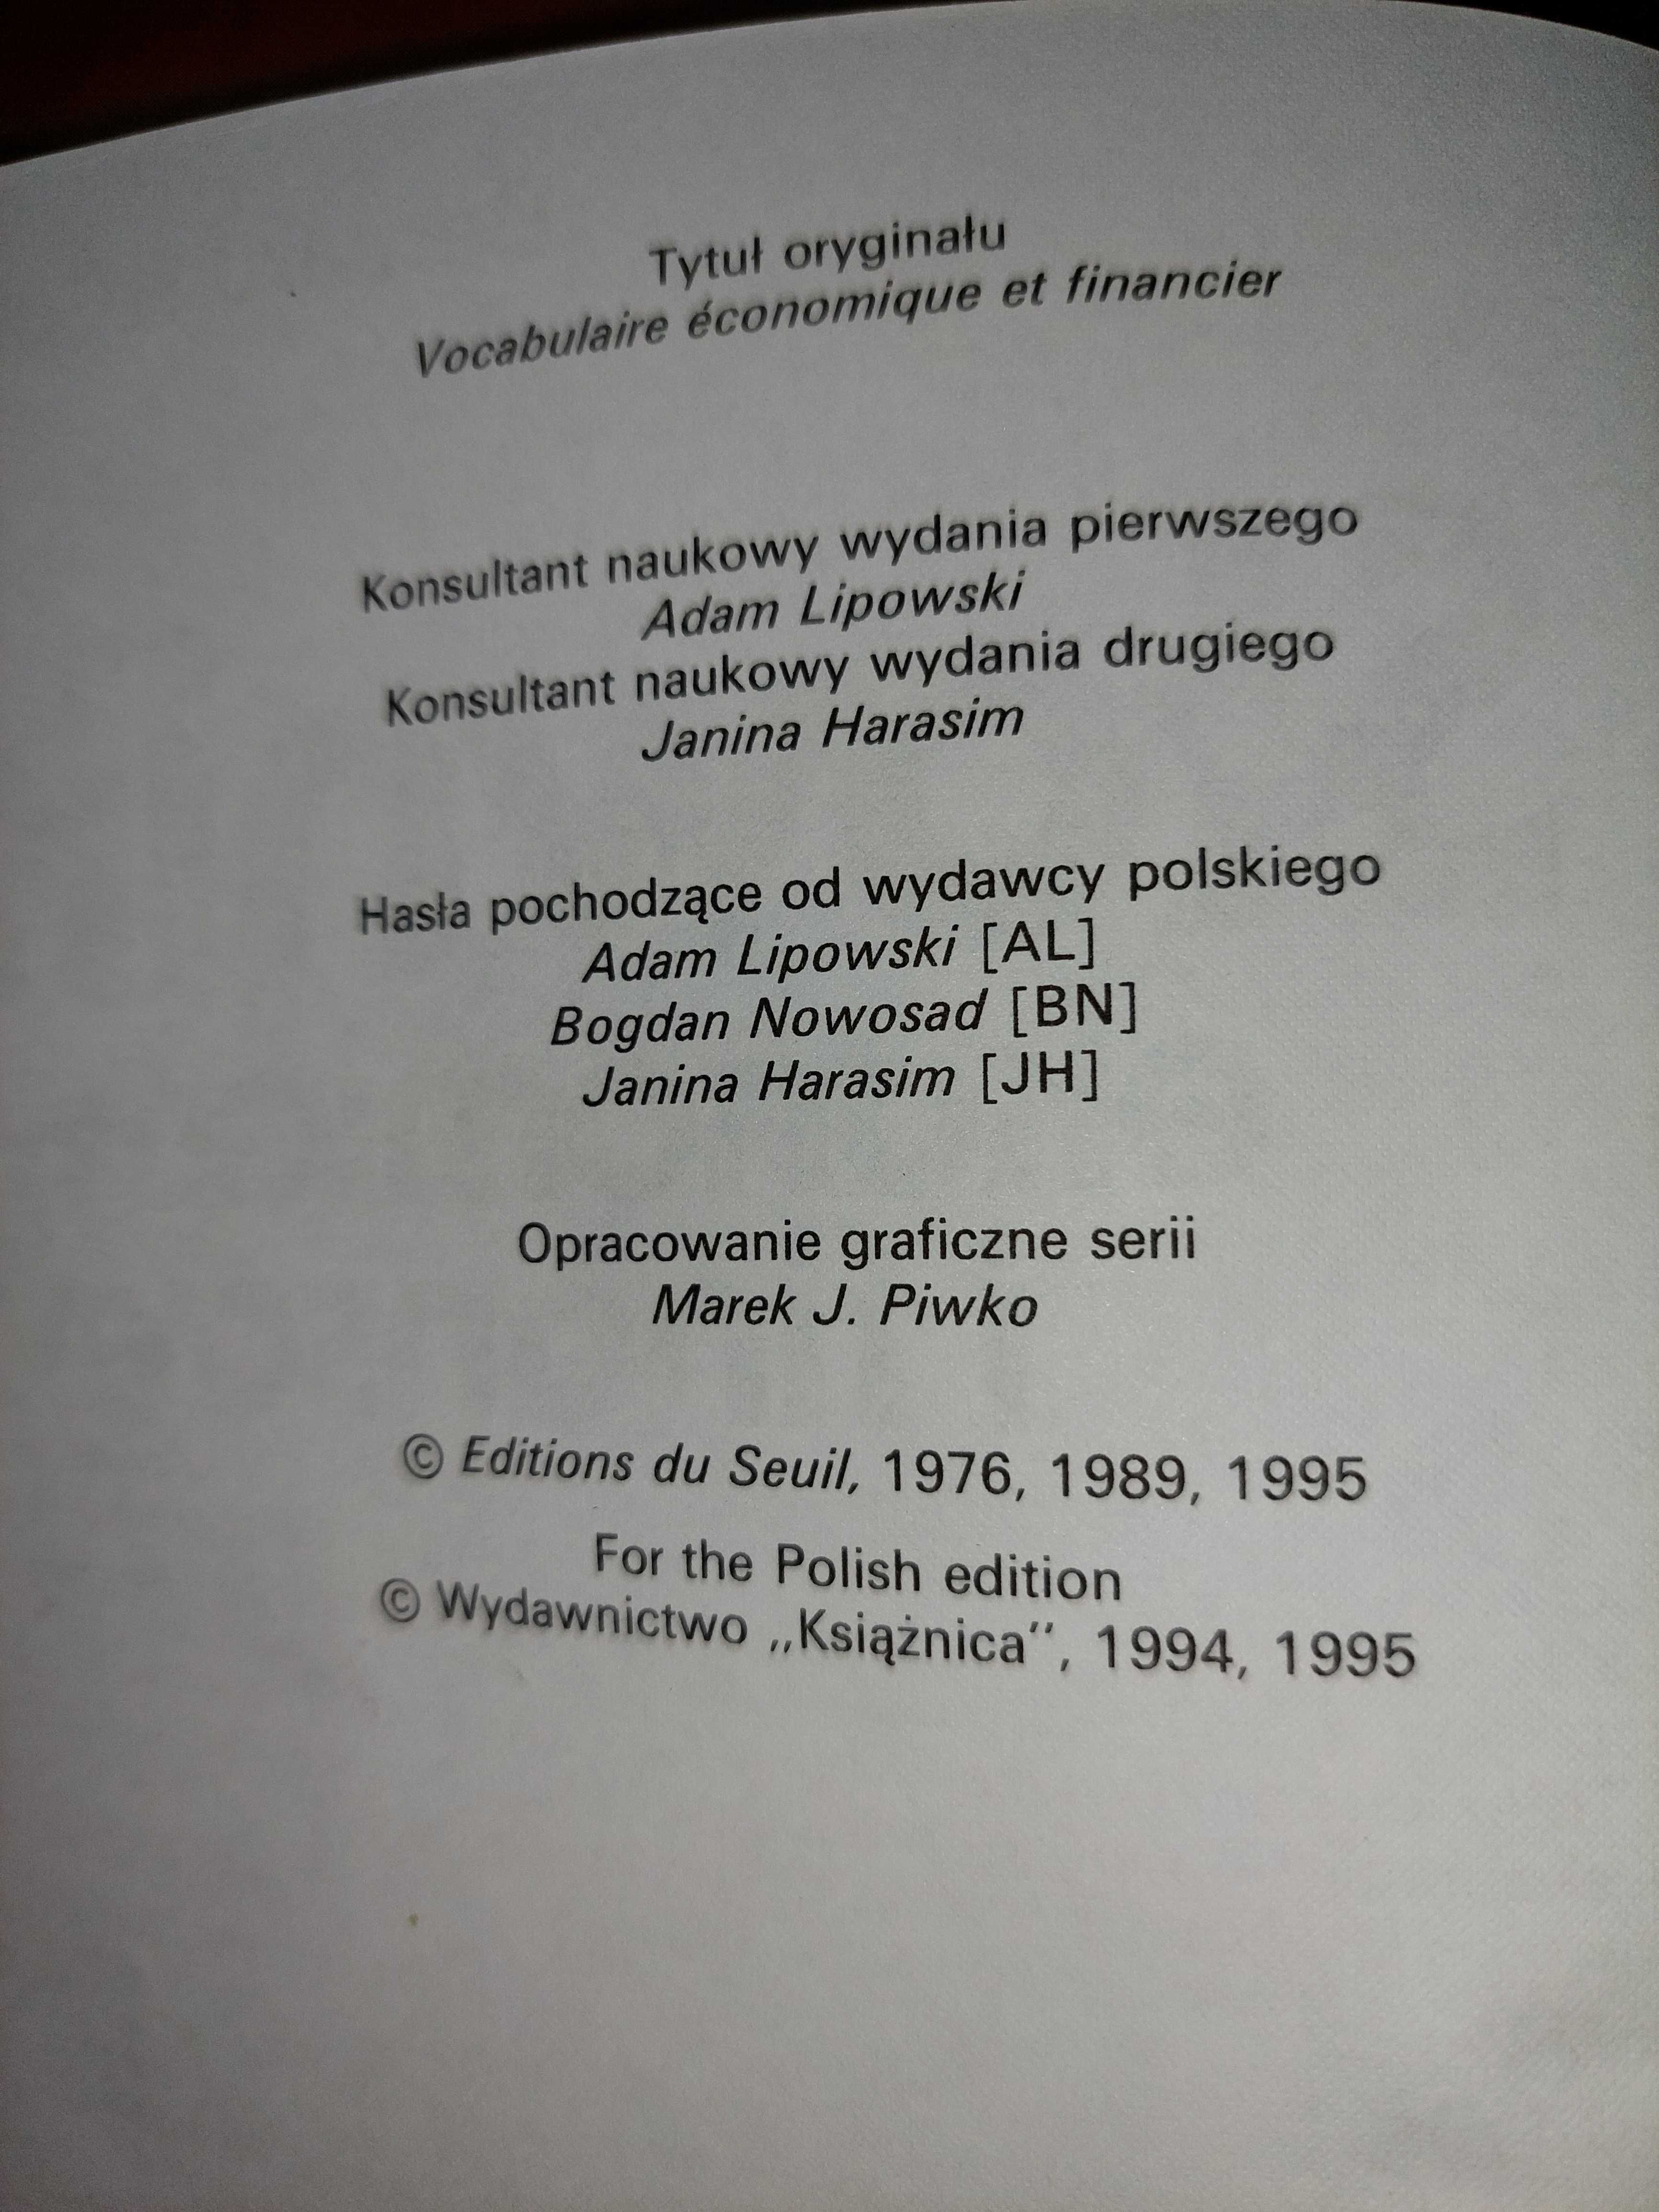 Słownik Ekonomiczny i Finansowy Wydawnictwo "Książnica" 1994,1995